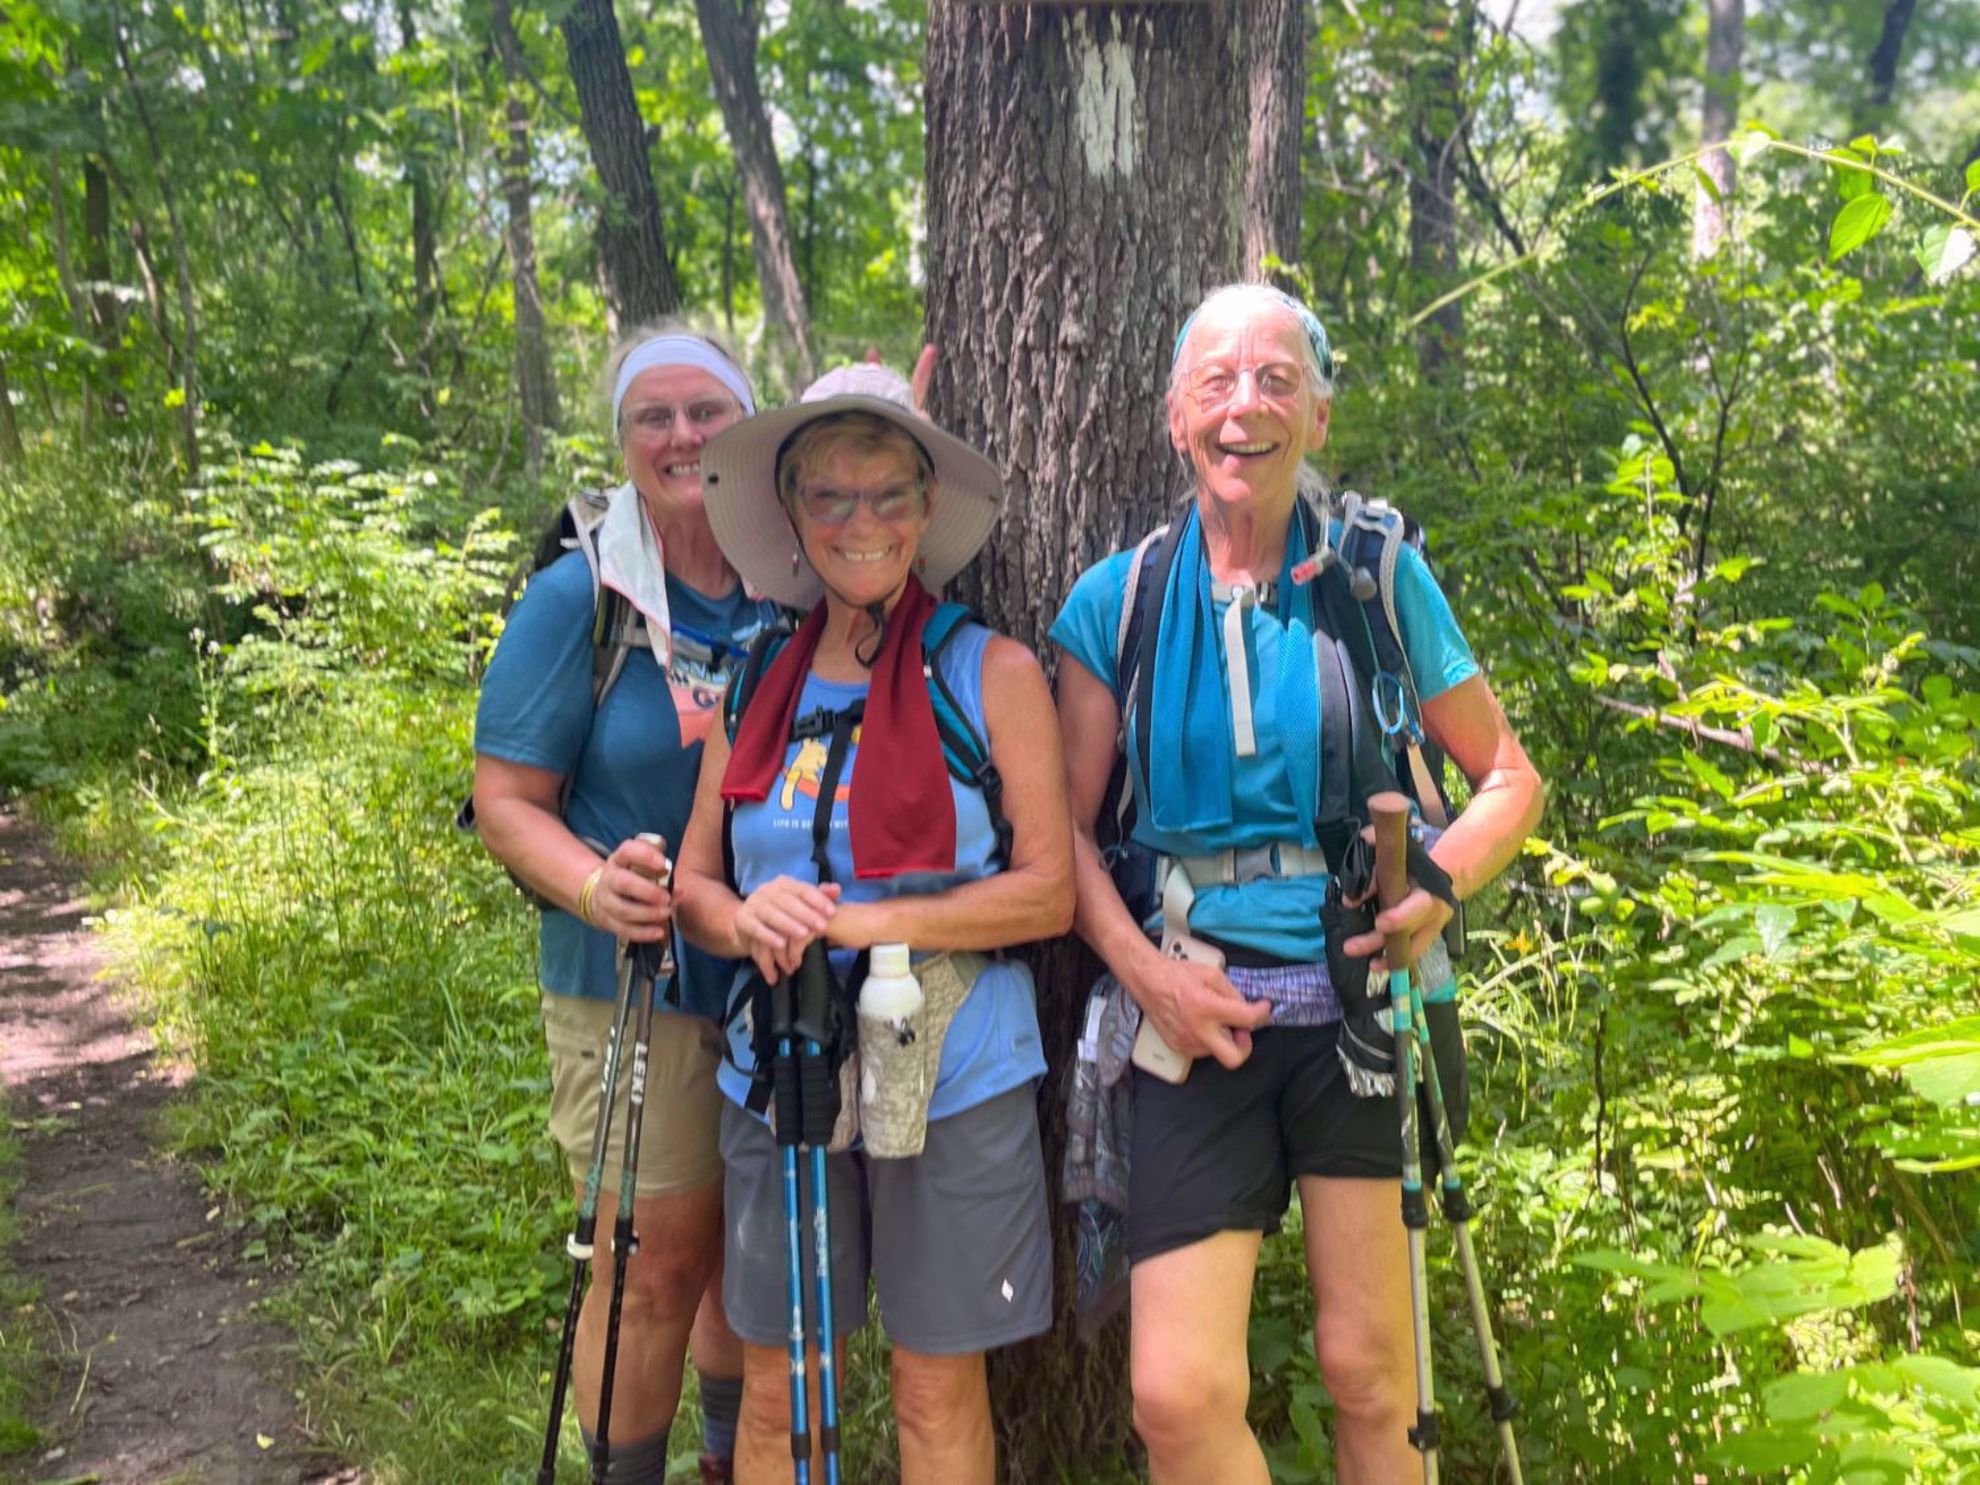 appalachian connecticut women hiking